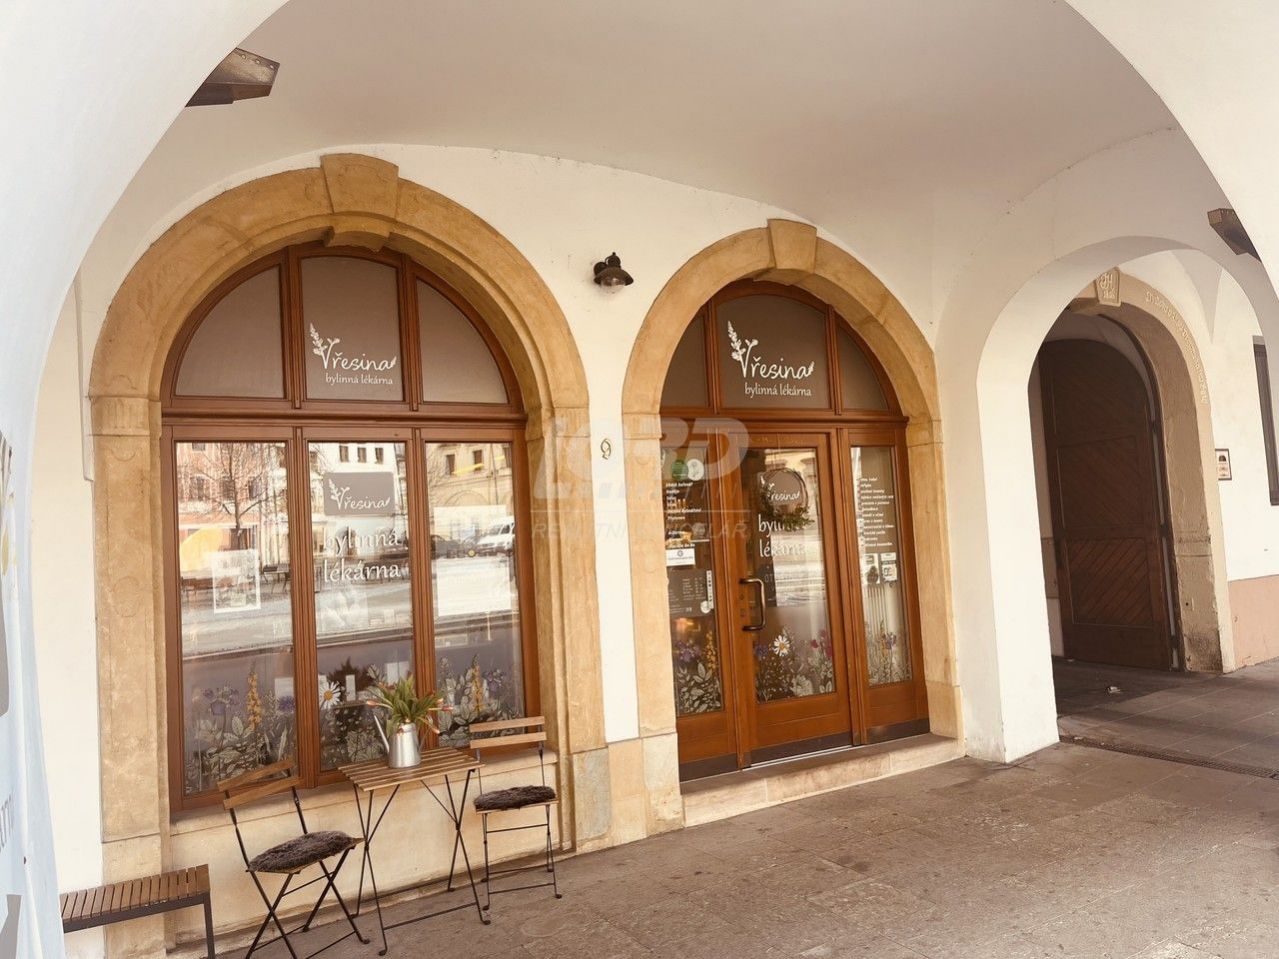 Prodej obchodu  bylinné lékárny - v historickém centru Hradce Králové, obrázek č. 1